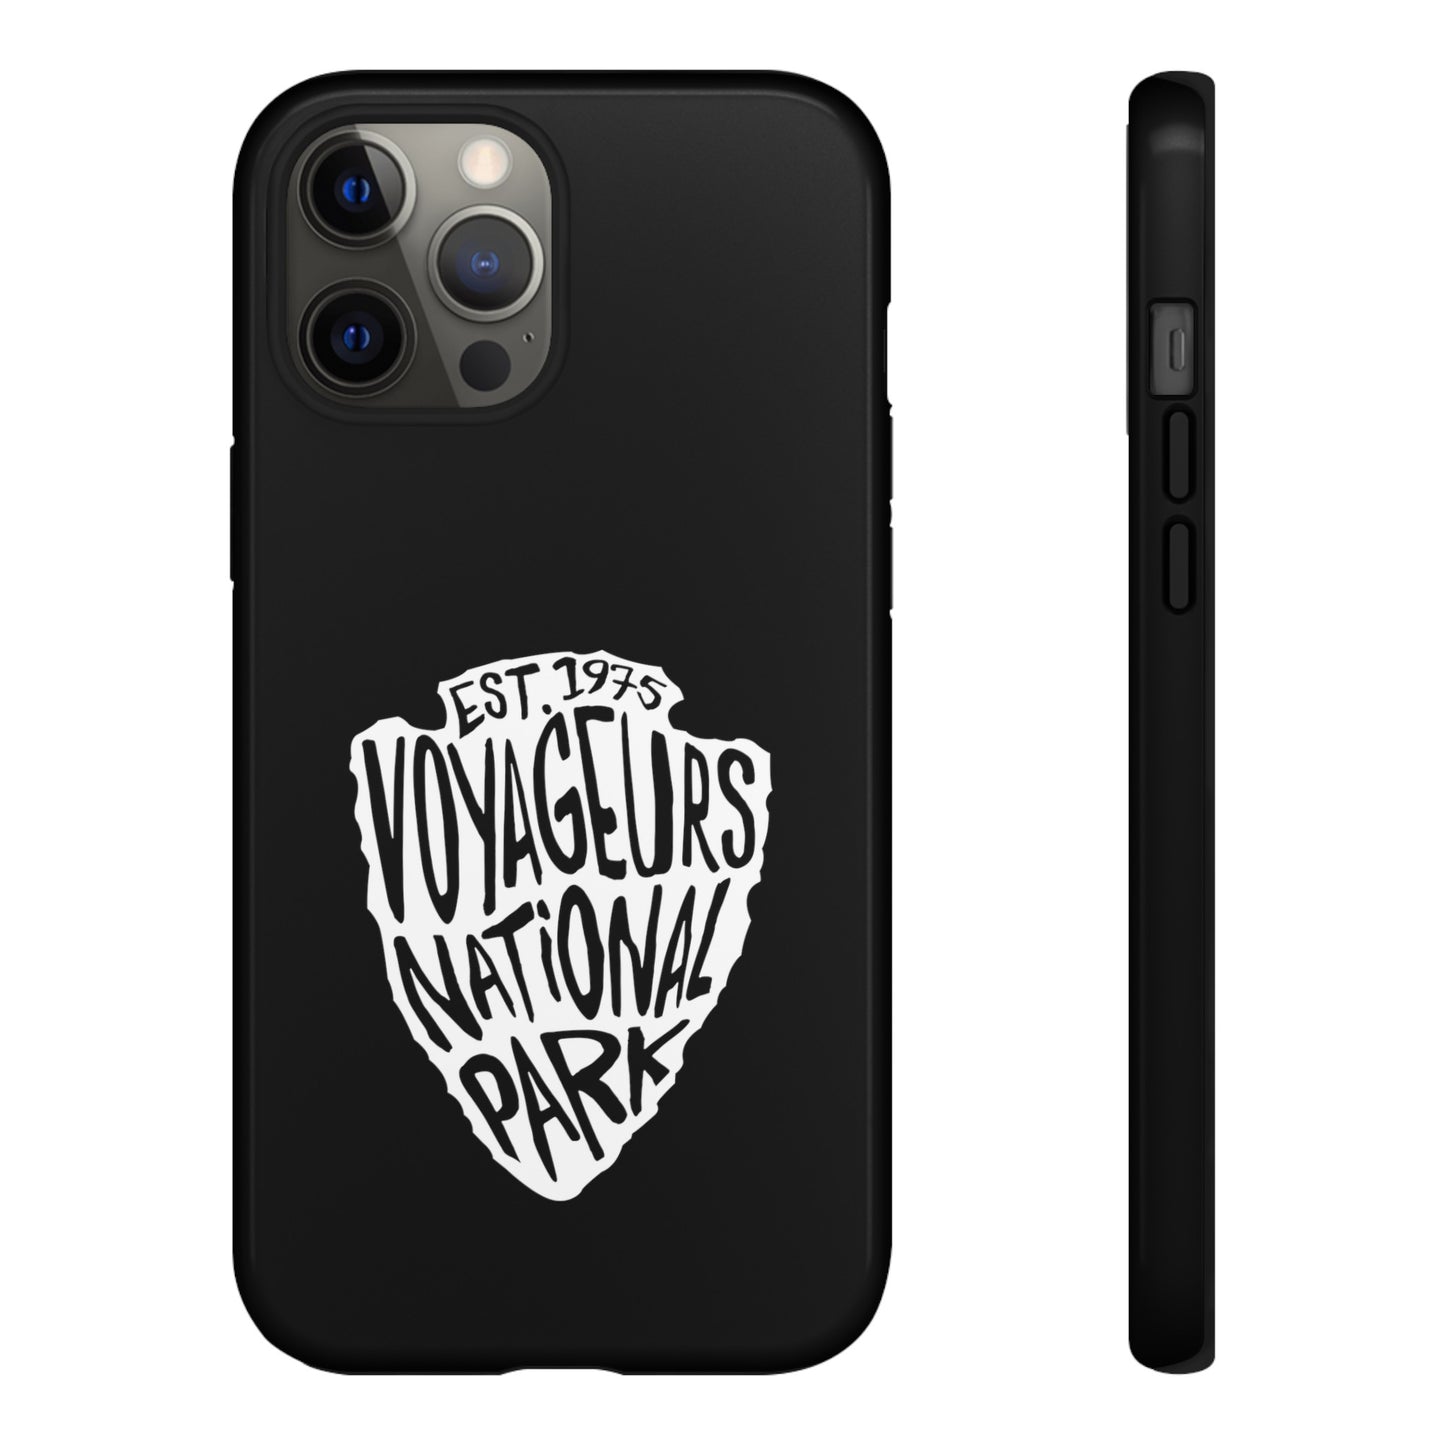 Voyageurs National Park Phone Case - Arrowhead Design